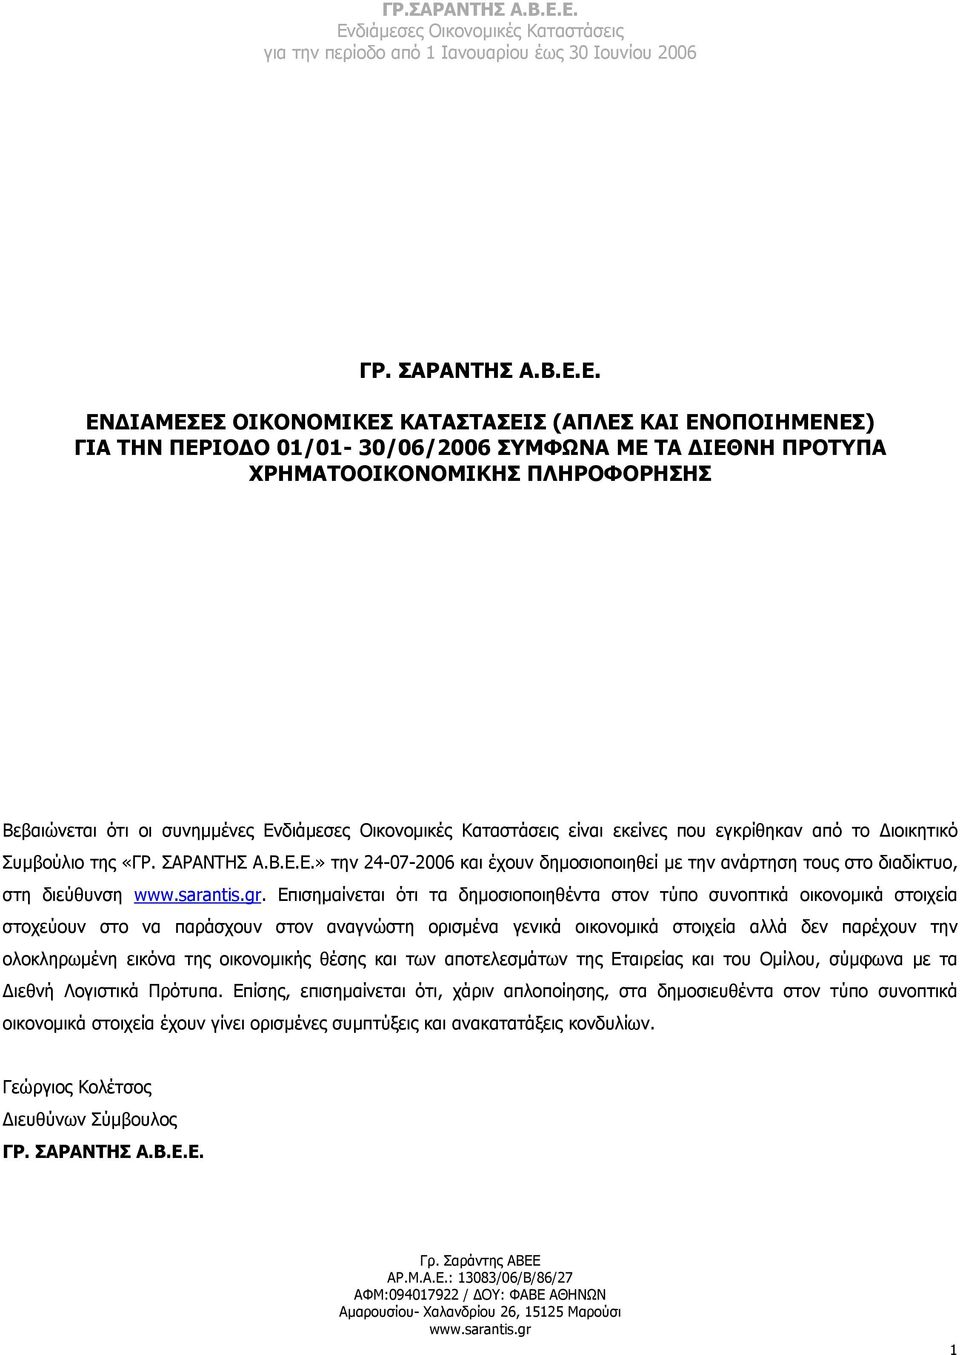 που εγκρίθηκαν από το ιοικητικό Συµβούλιο της «Ε.» την 24-07-2006 και έχουν δηµοσιοποιηθεί µε την ανάρτηση τους στο διαδίκτυο, στη διεύθυνση www.sarantis.gr.